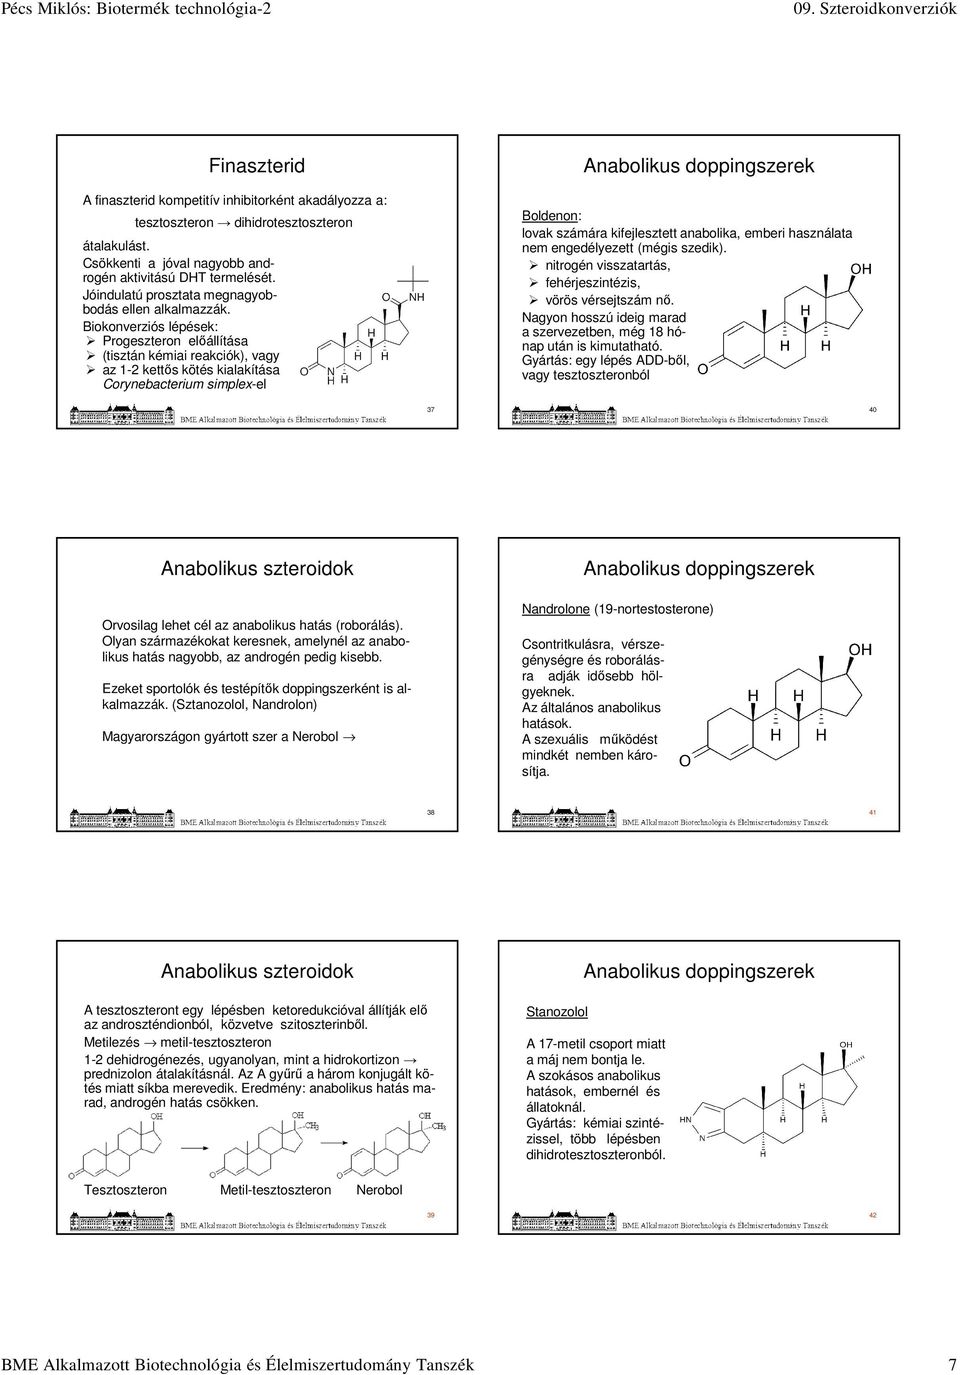 Corynebacterium simplex-el Anabolikus doppingszerek Boldenon: lovak számára kifejlesztett anabolika, emberi használata nem engedélyezett (mégis szedik).